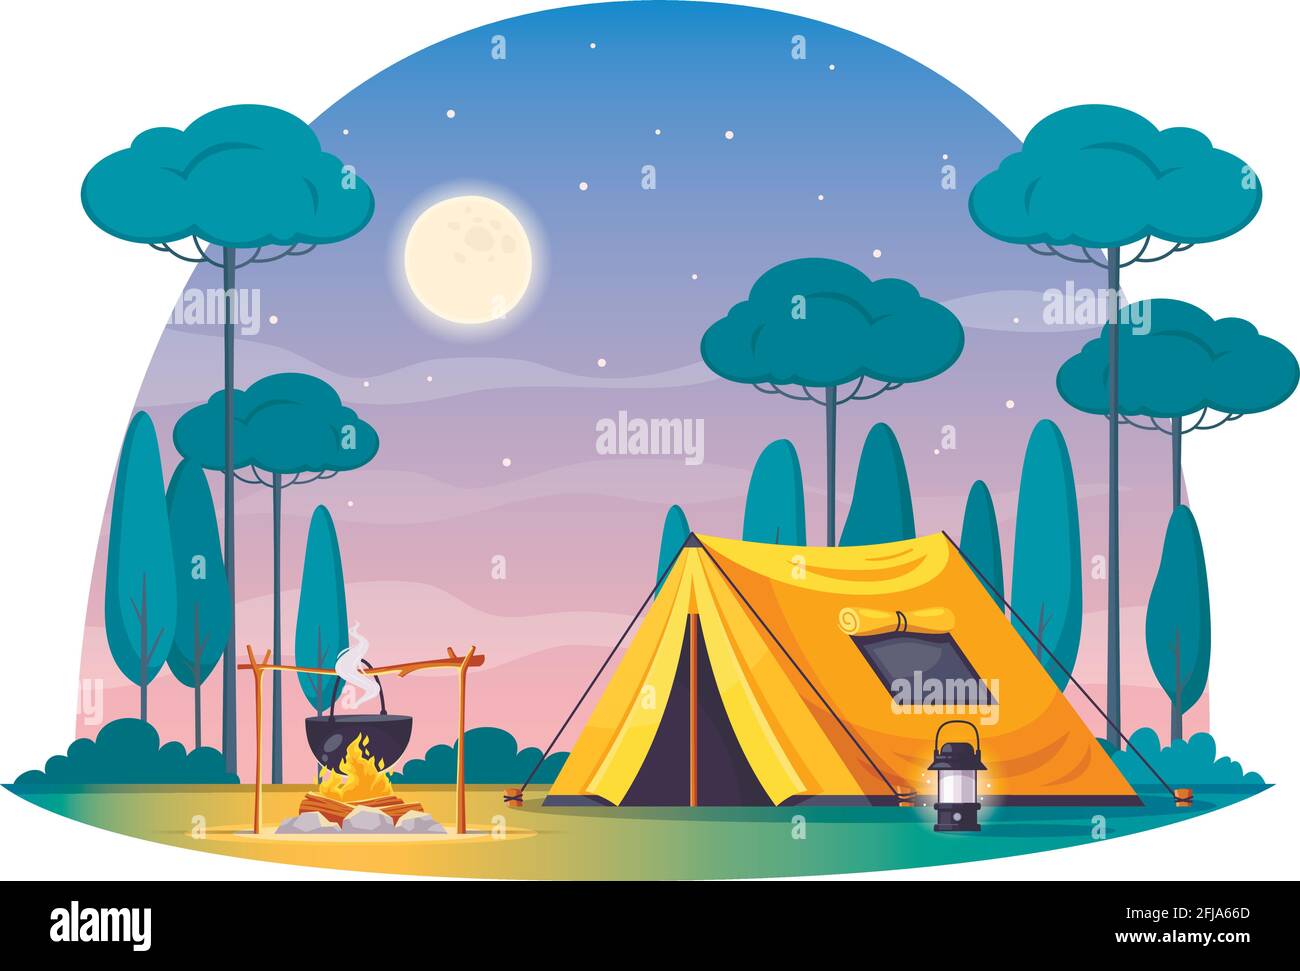 Amazoncom DORCEV Dibujos animados camping al aire libre telón de fondo  Luna noche camping al aire libre escena naranja tiendas fuego naturaleza  senderismo mañana bosque niño exploradores actividad viajes niños adultos  foto